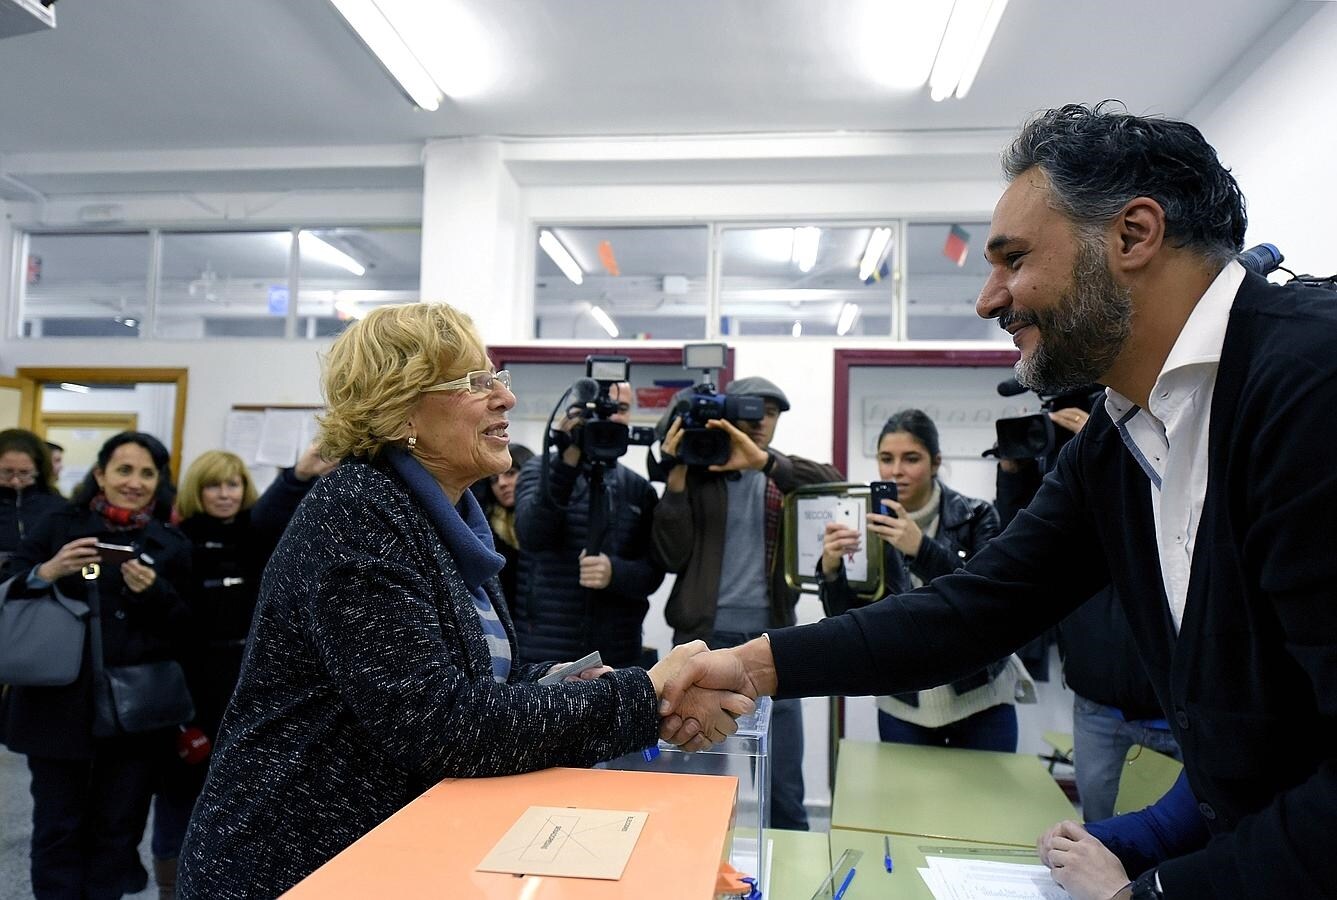 Para Manuela Carmena, hay una «enorme ilusión» por el resultado de estas elecciones, en una democracia que es «joven». La alcaldesa de Madrid ha calificado de «muy hermoso» el ambiente de cambio que se respira, tras votar esta mañana en el distrito de Hortaleza.